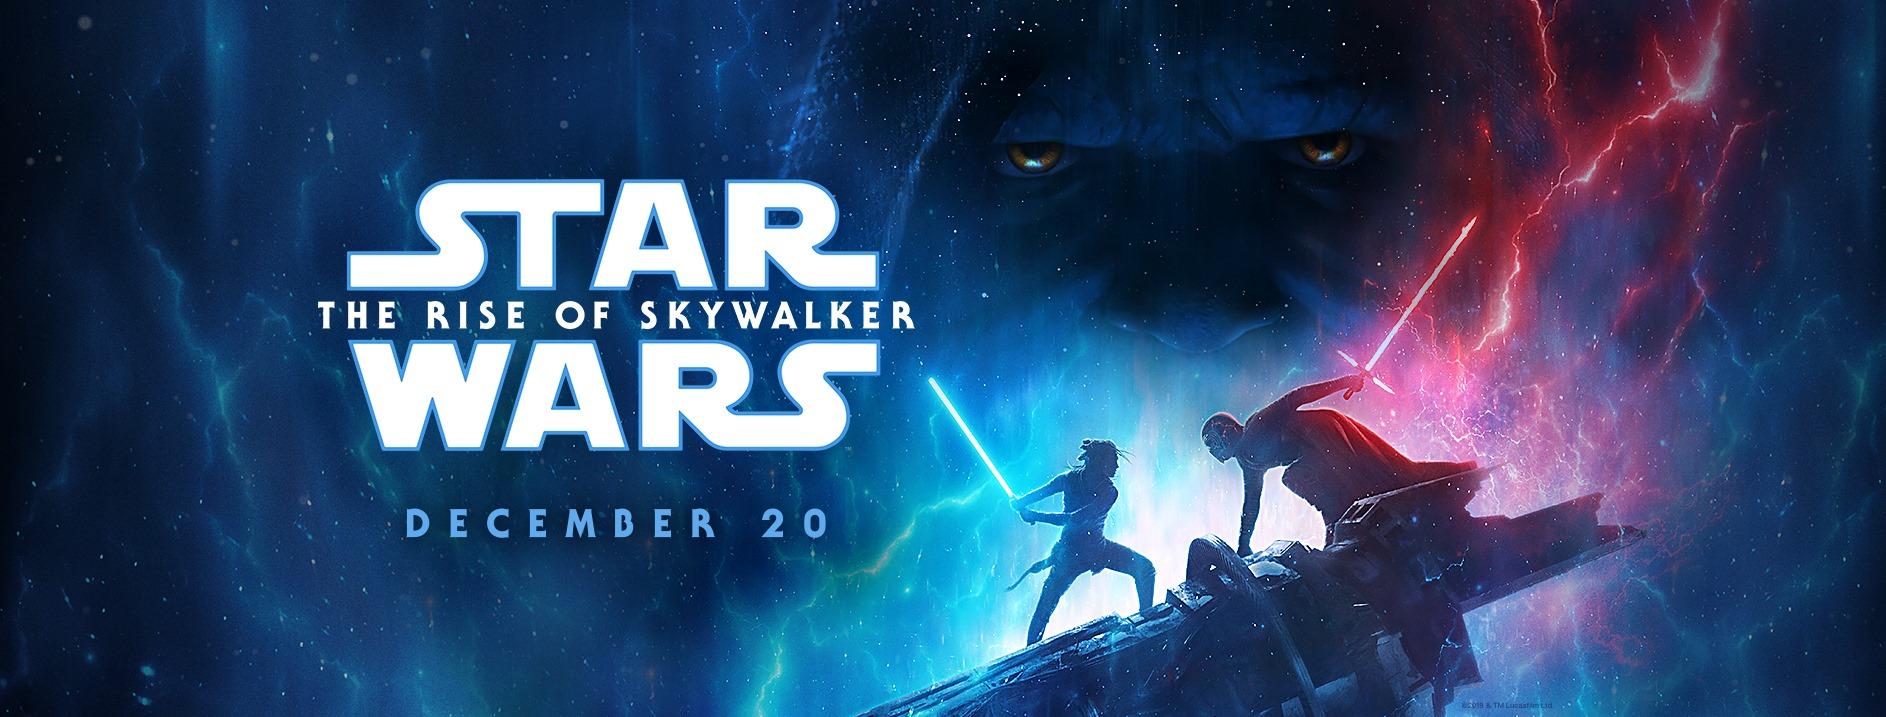 Comienzan las preventas para Star Wars: El ascenso de Skywalker